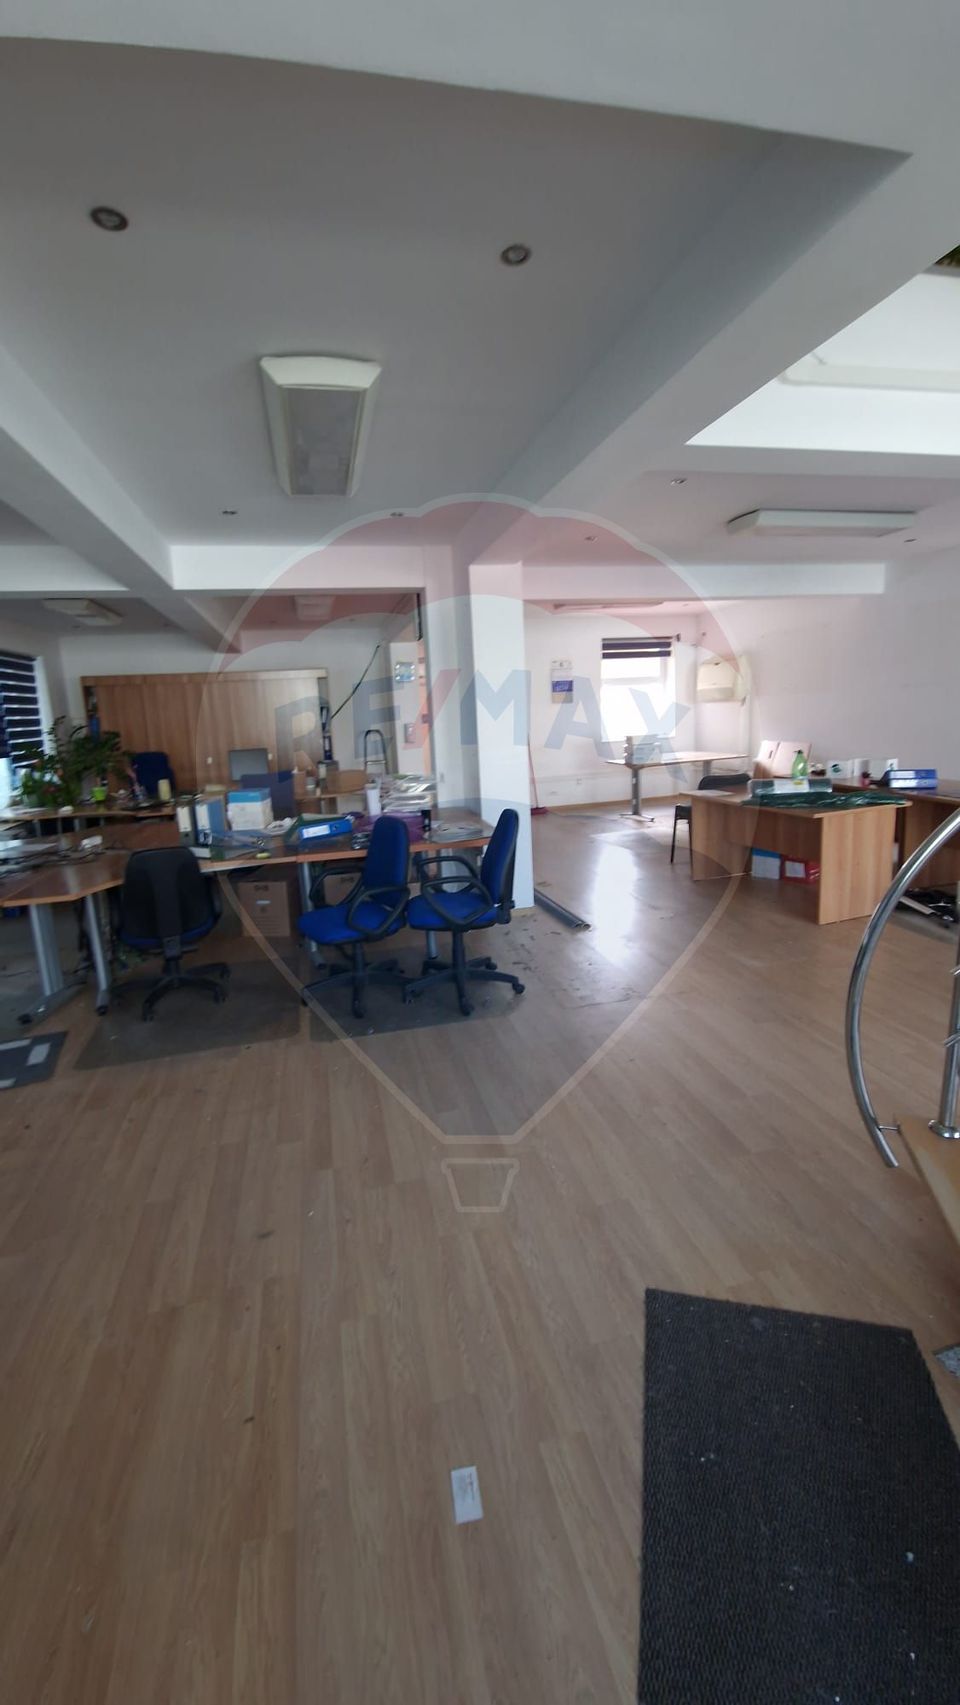 Clădire Office Elegantă: Oportunitate Unică în Dorobanți